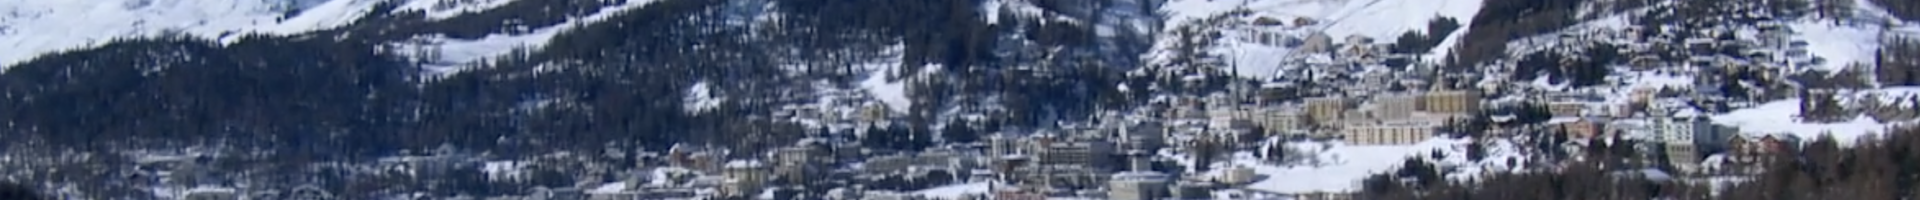 Saint-Moritz, le Monaco des neiges